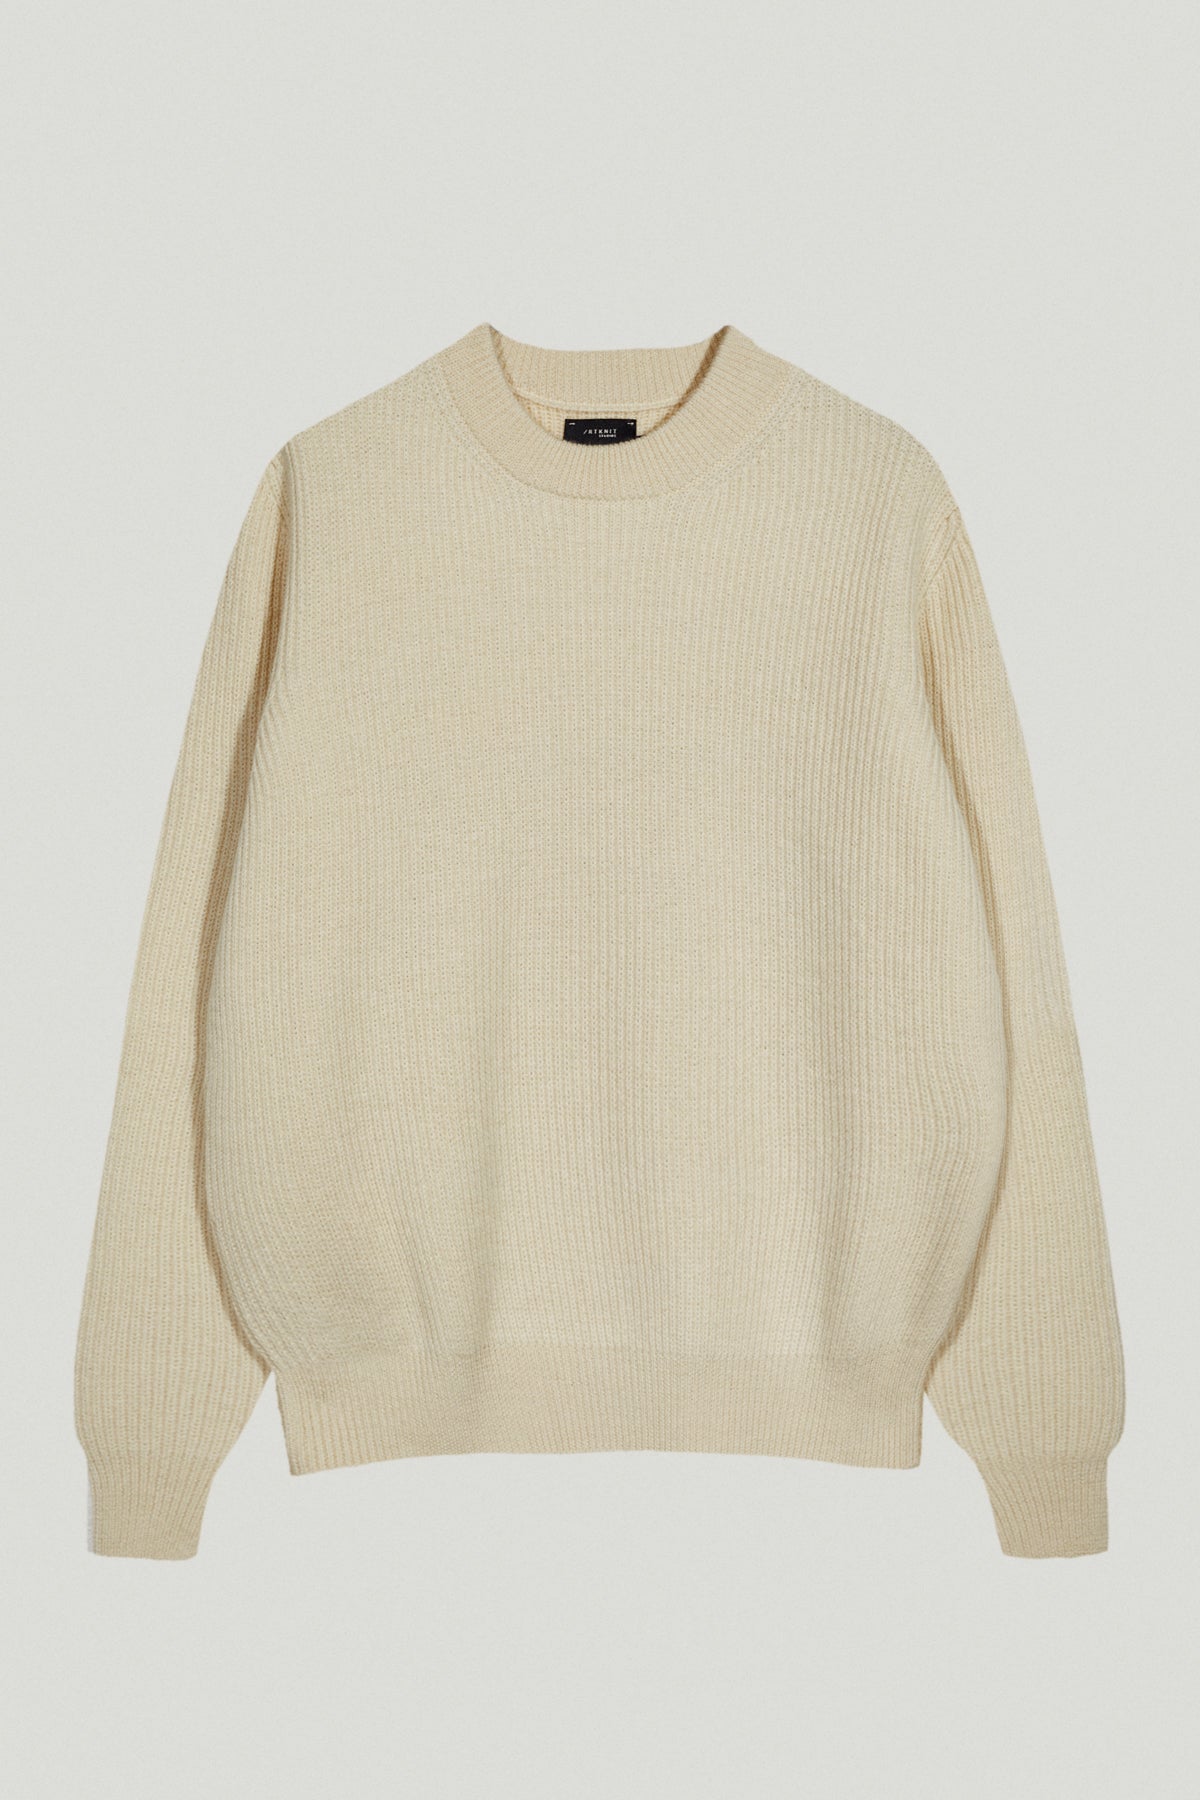 Juniper Ecru | The Natural Dye Sweater